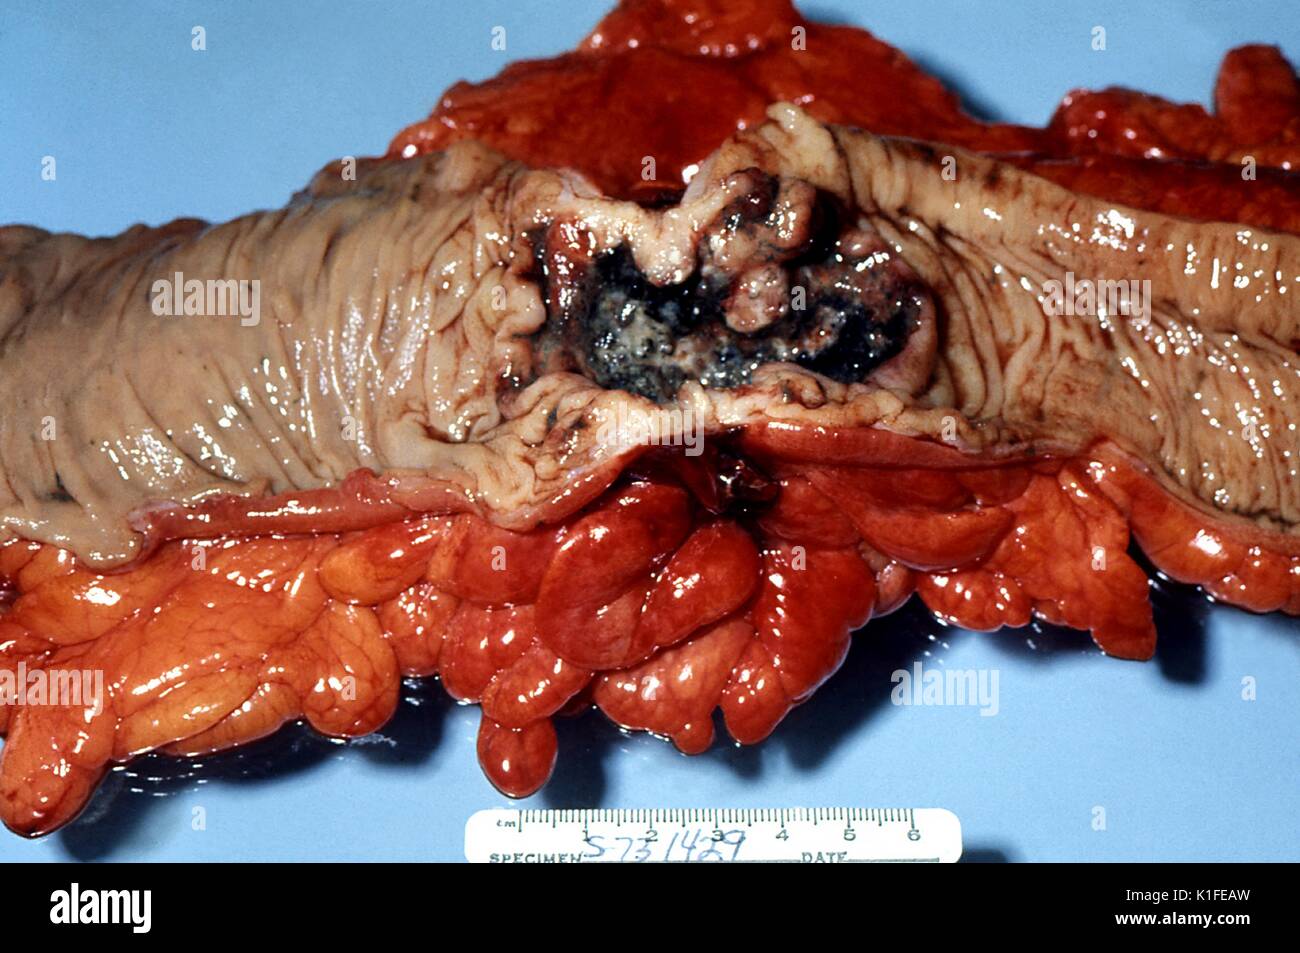 Sotto al lordo esame patologico, questo ulcerata adenocarcinomatous lesione del colon è stato rivelato. Ulcerato, endophytic adenocarcinoma del colon. Campione chirurgico. Immagine cortesia CDC/Dott. Edwin P. Ewing, Jr., 1973. Foto Stock